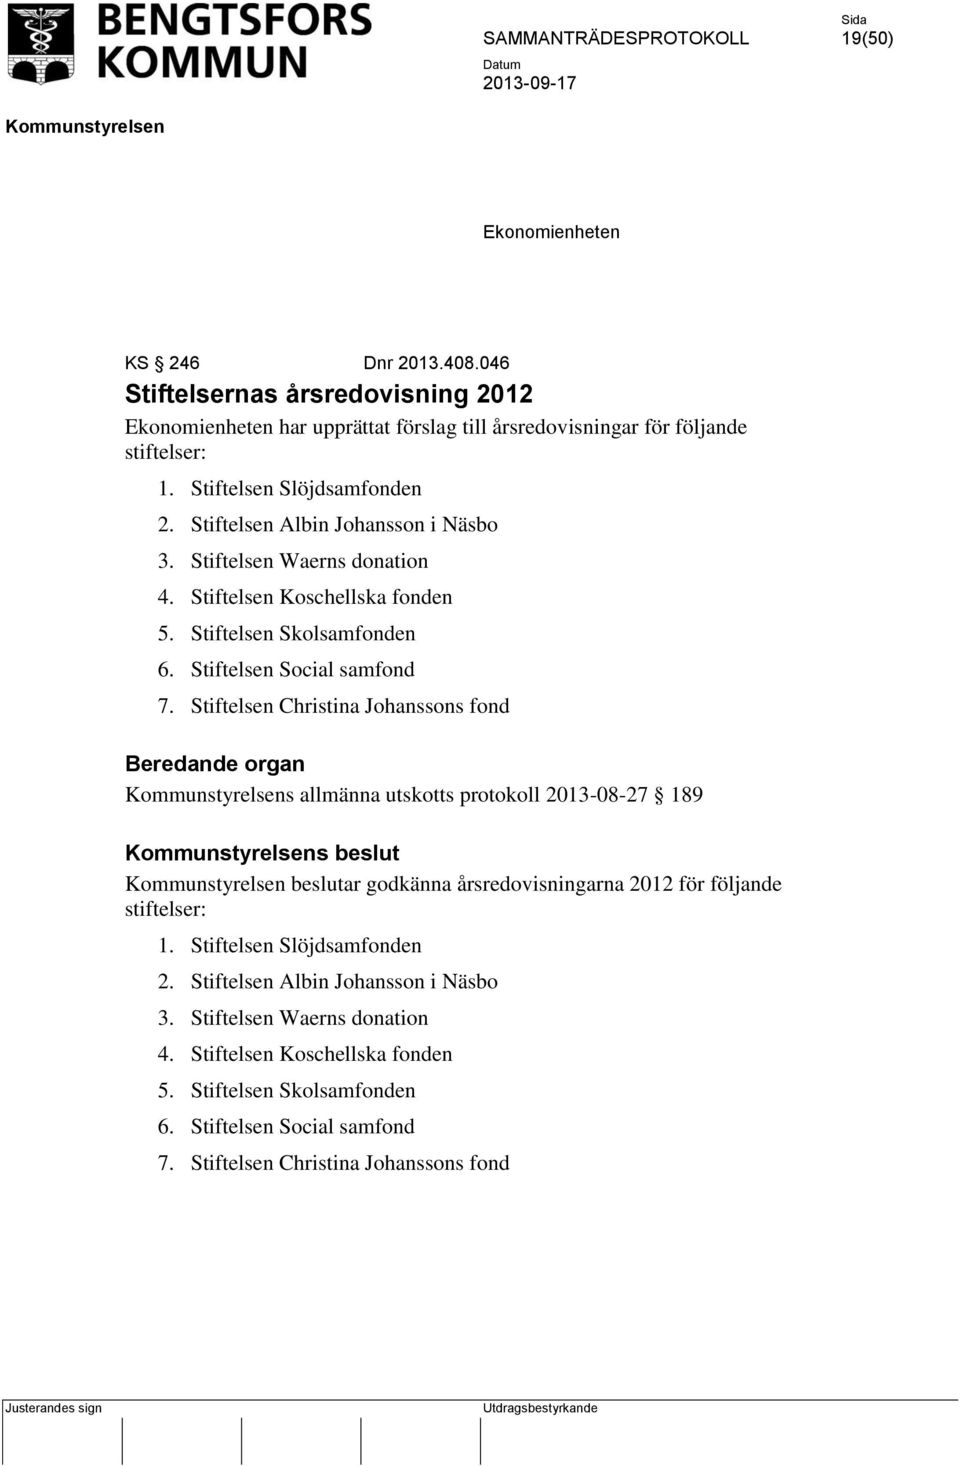 Stiftelsen Christina Johanssons fond Beredande organ s allmänna utskotts protokoll 2013-08-27 189 s beslut beslutar godkänna årsredovisningarna 2012 för följande stiftelser: 1.